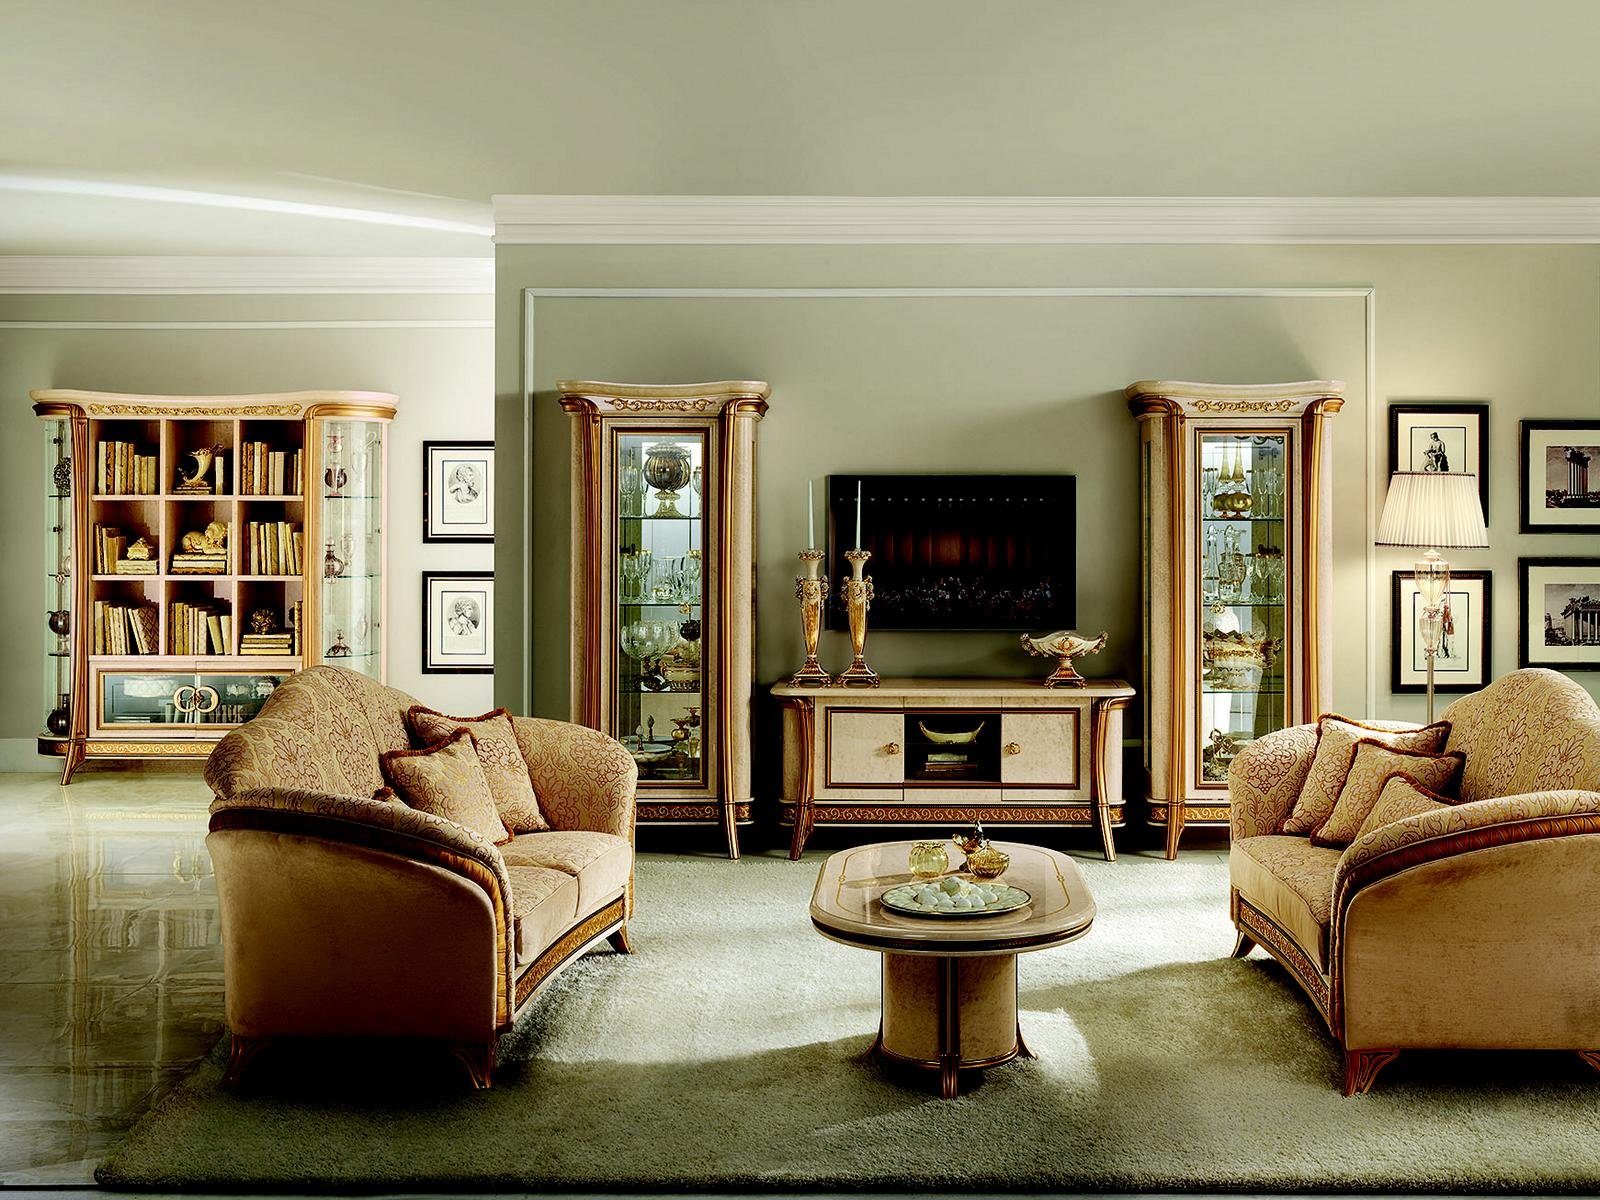 Wohnzimmer-Set, JVmoebel Couch Italienische arredoclassic™ Klasse Neu 3+1+1 Möbel Sofa Luxus Sofagarnitur